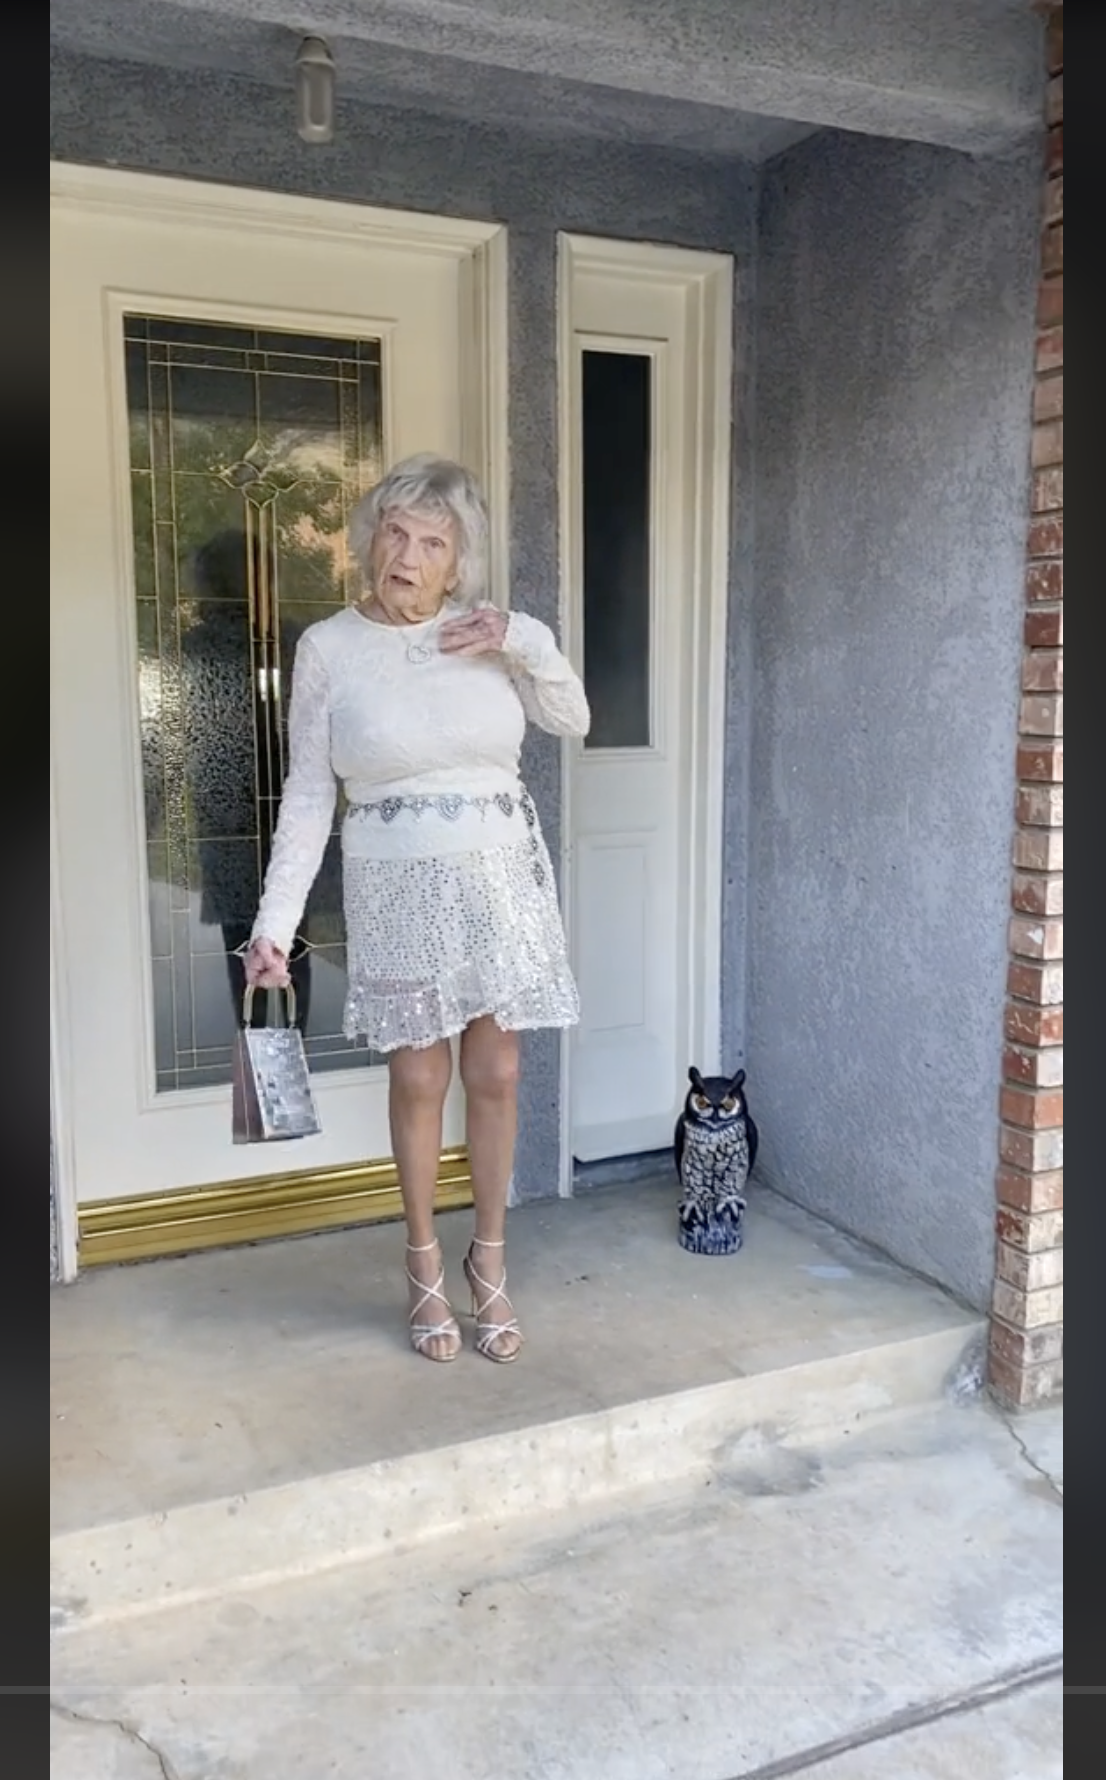 Betsy Lou devant sa maison, dans une vidéo qui date du 6 février 2023 | Source : tiktok.com/@betsylou.piano